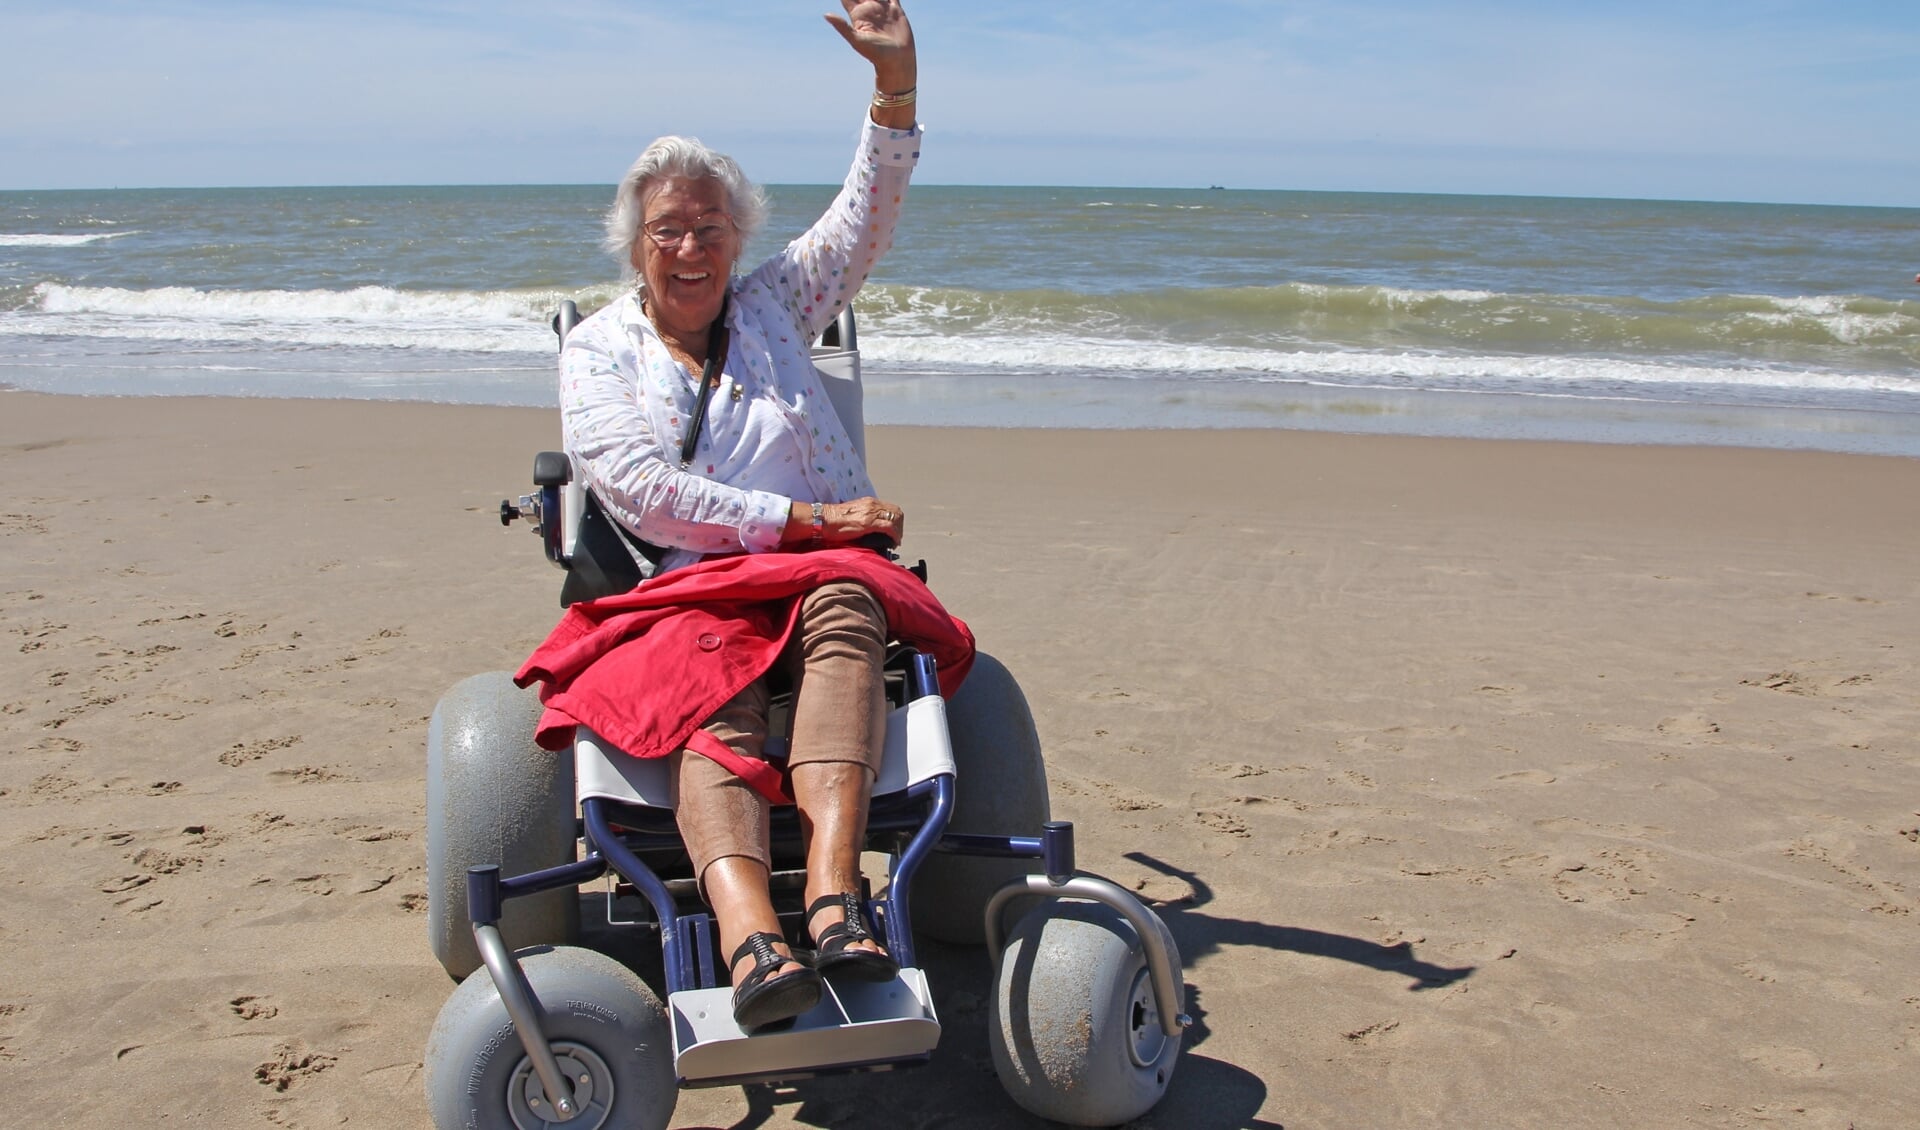 Mevrouw T. Johannes uit ’t Zand geniet met volle teugen van haar strandrit. (foto: Ton v/d/ Logt)